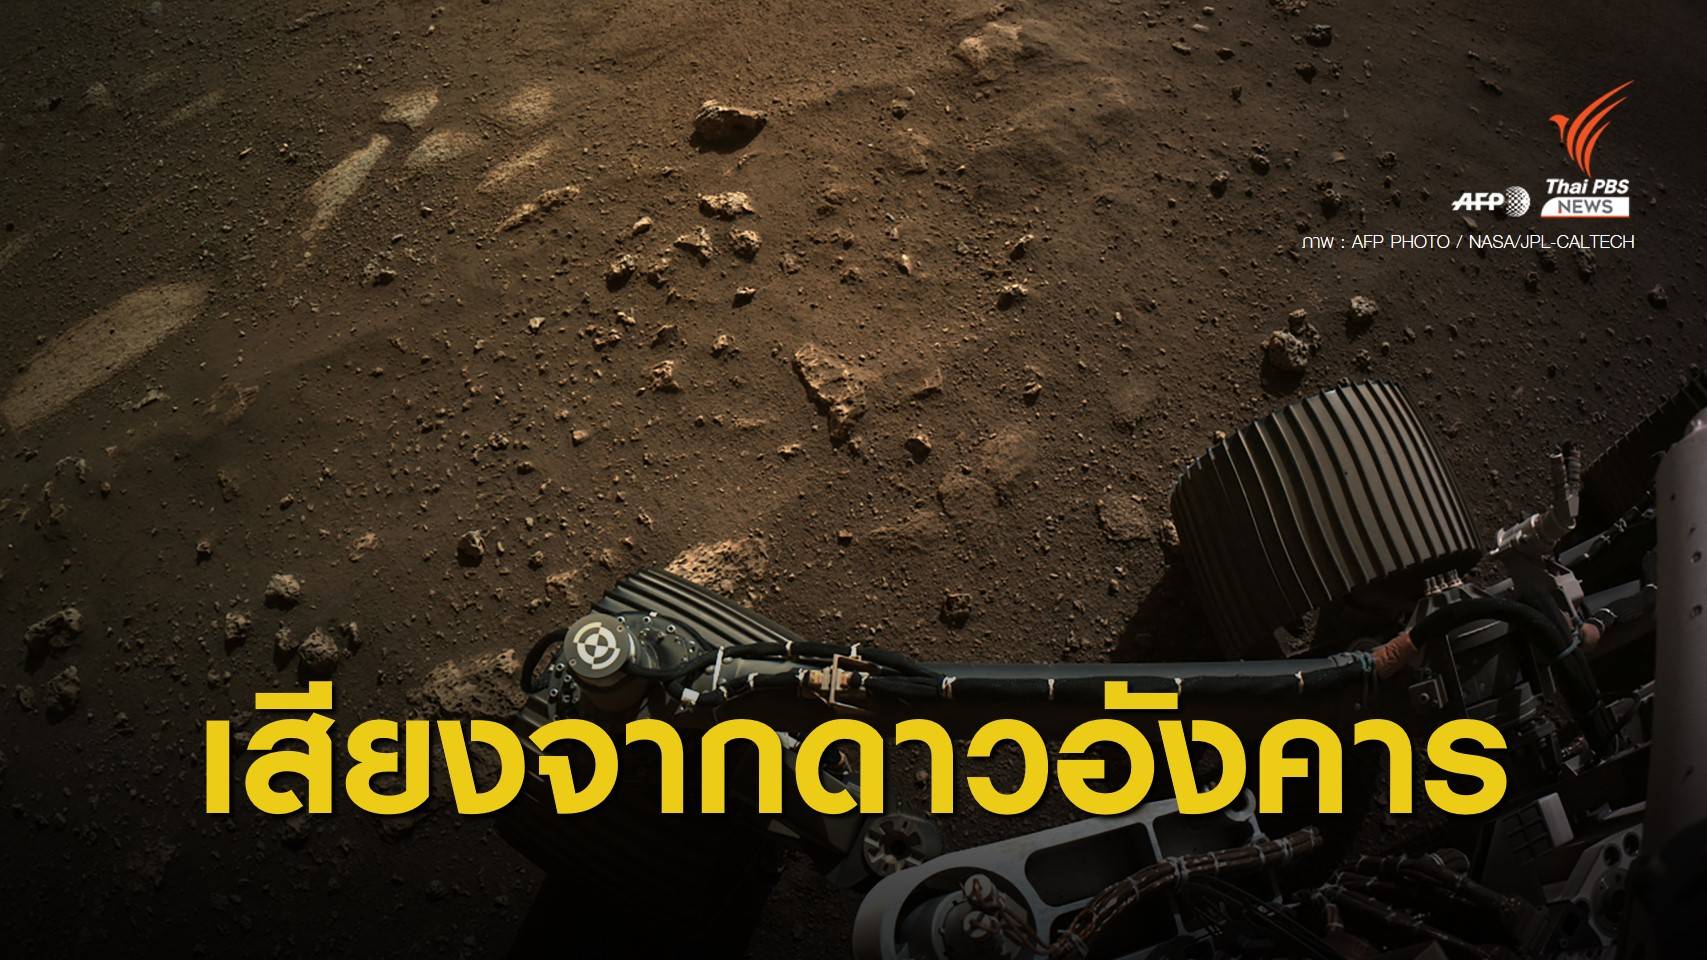 "นาซา" เปิดเสียงแรกบนดาวอังคาร จากหลุมอุกกาบาตเจซีโร